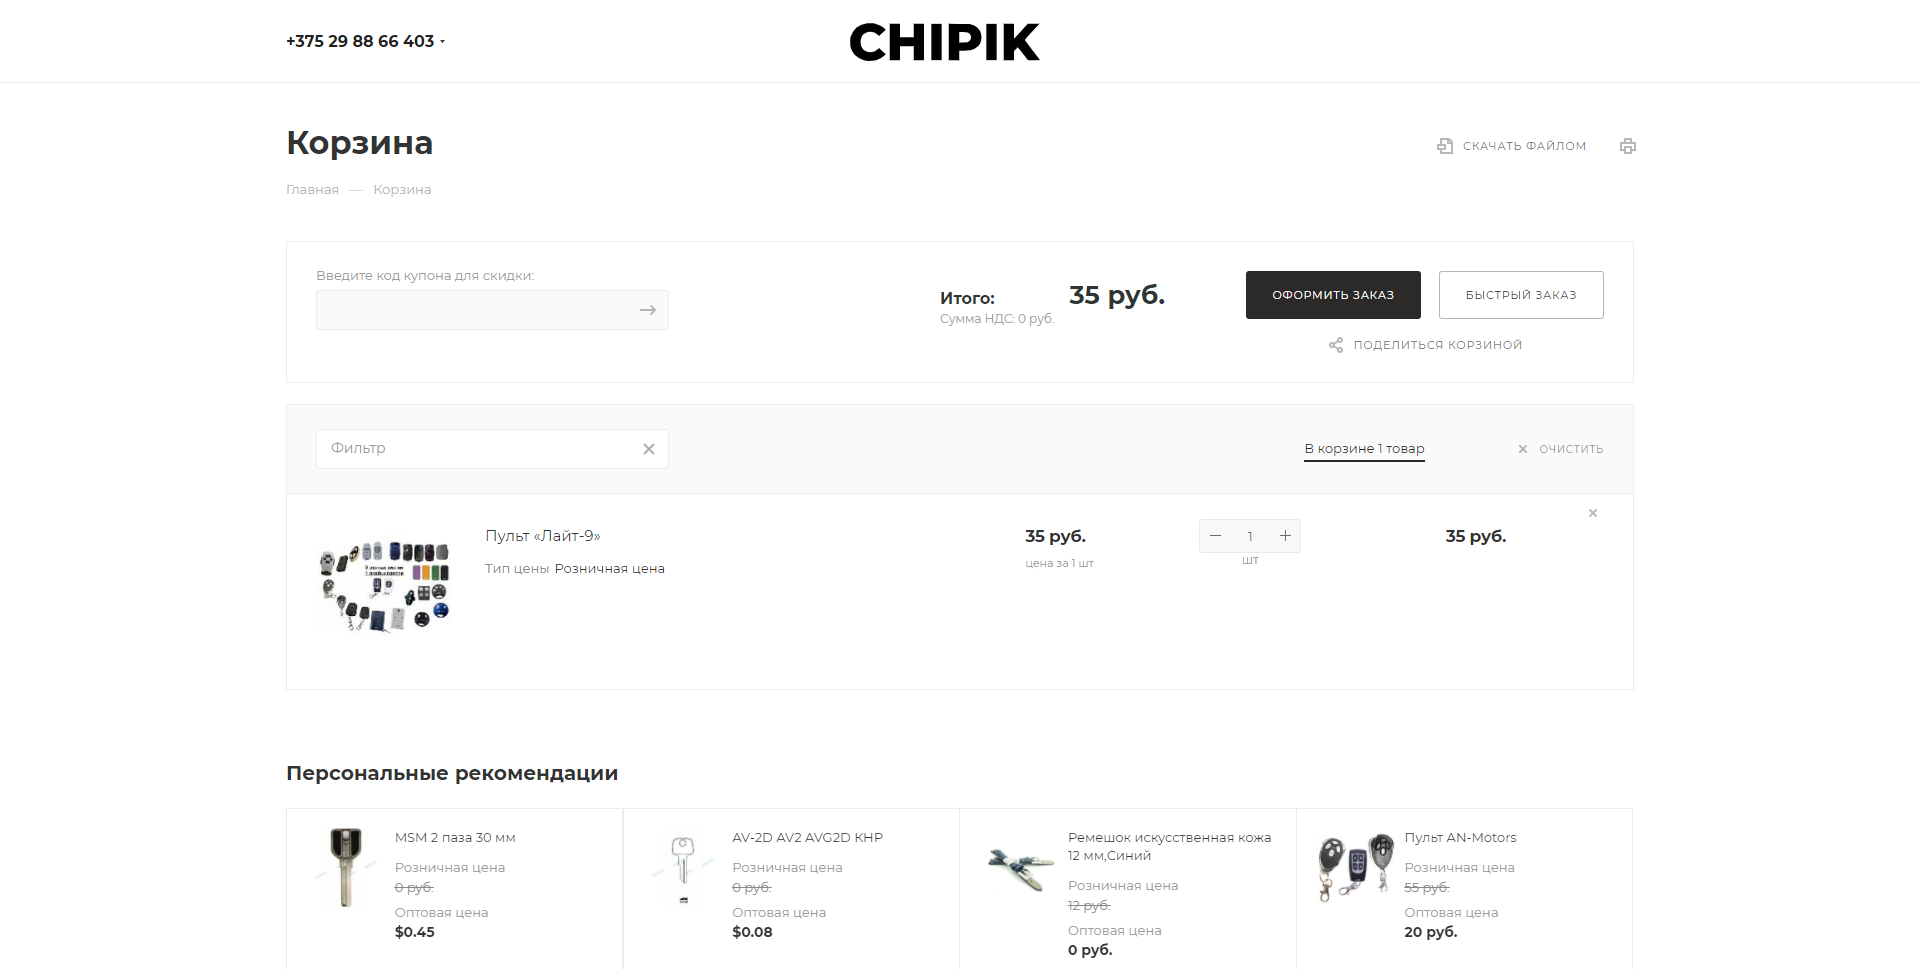 chipik - изготовление ключей в минске